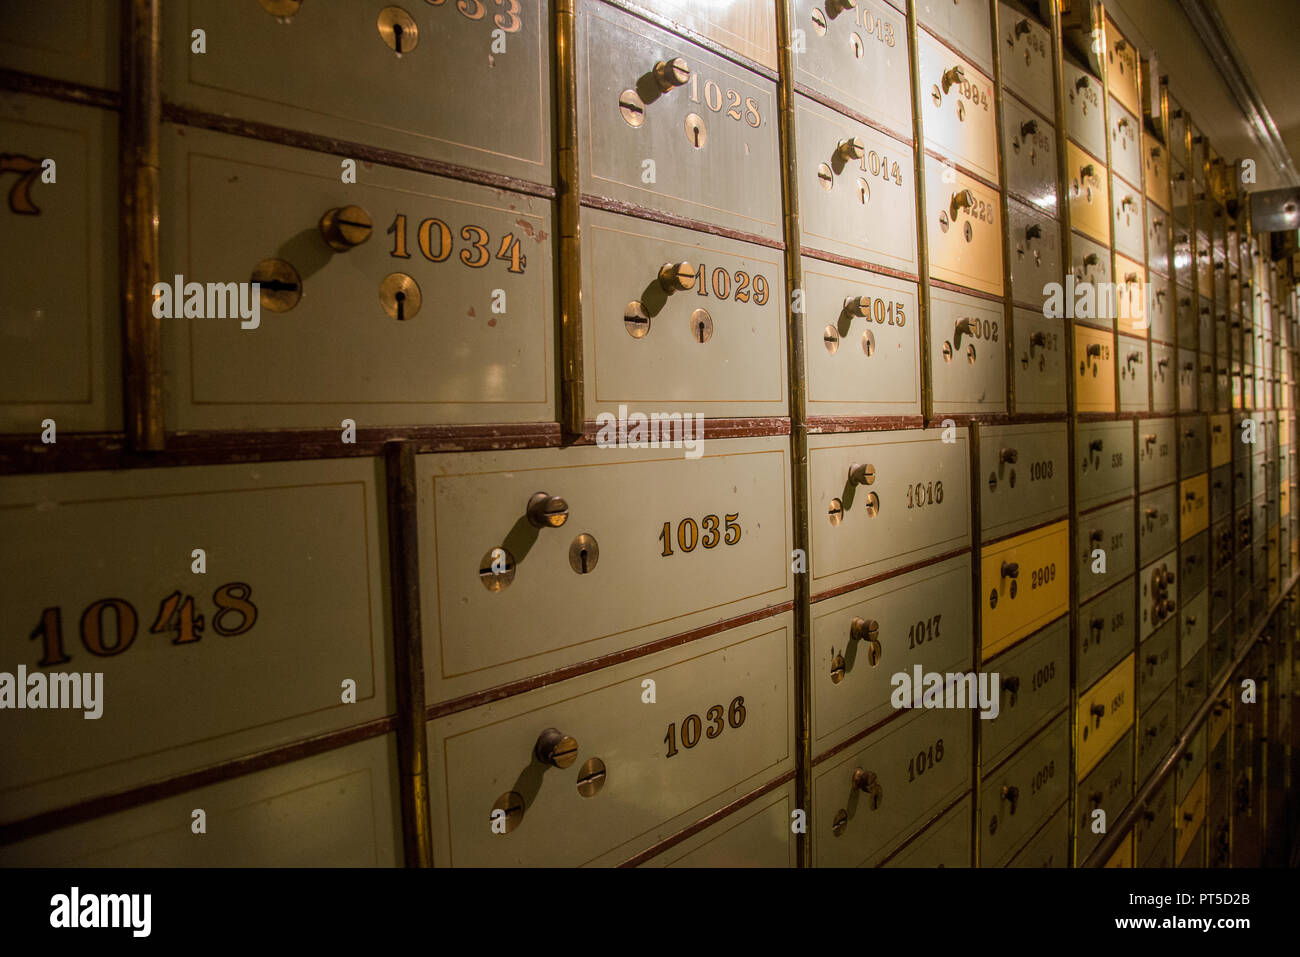 L'ancienne numérotation des casiers sécurisés à l'ancien bâtiment de la banque à Den Haag, Pays-Bas Banque D'Images